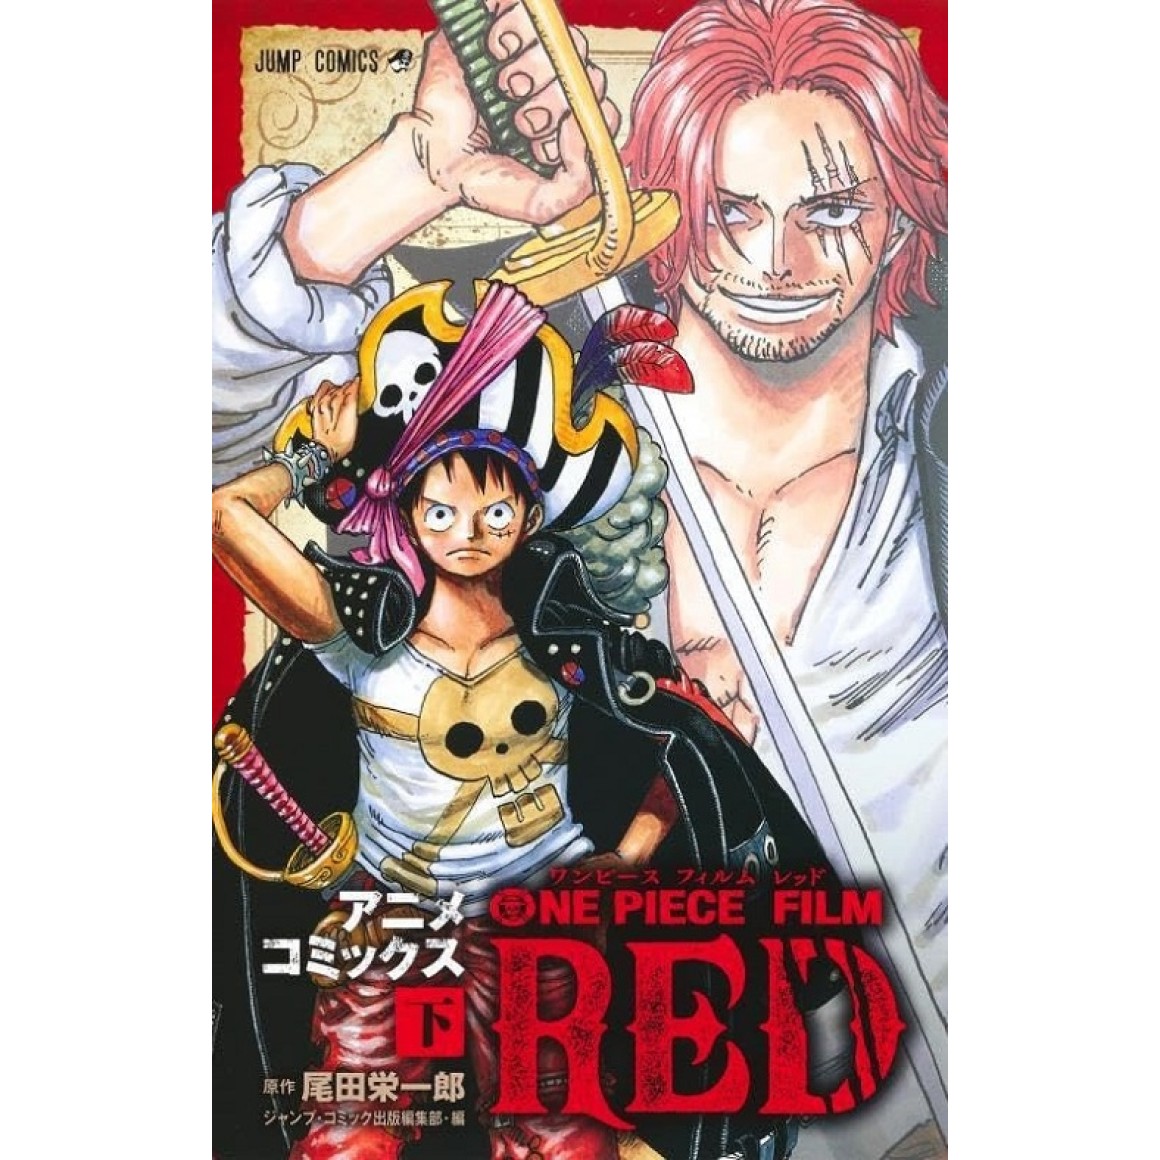 One Piece Film Red terá novel em agosto - Manga Livre RS